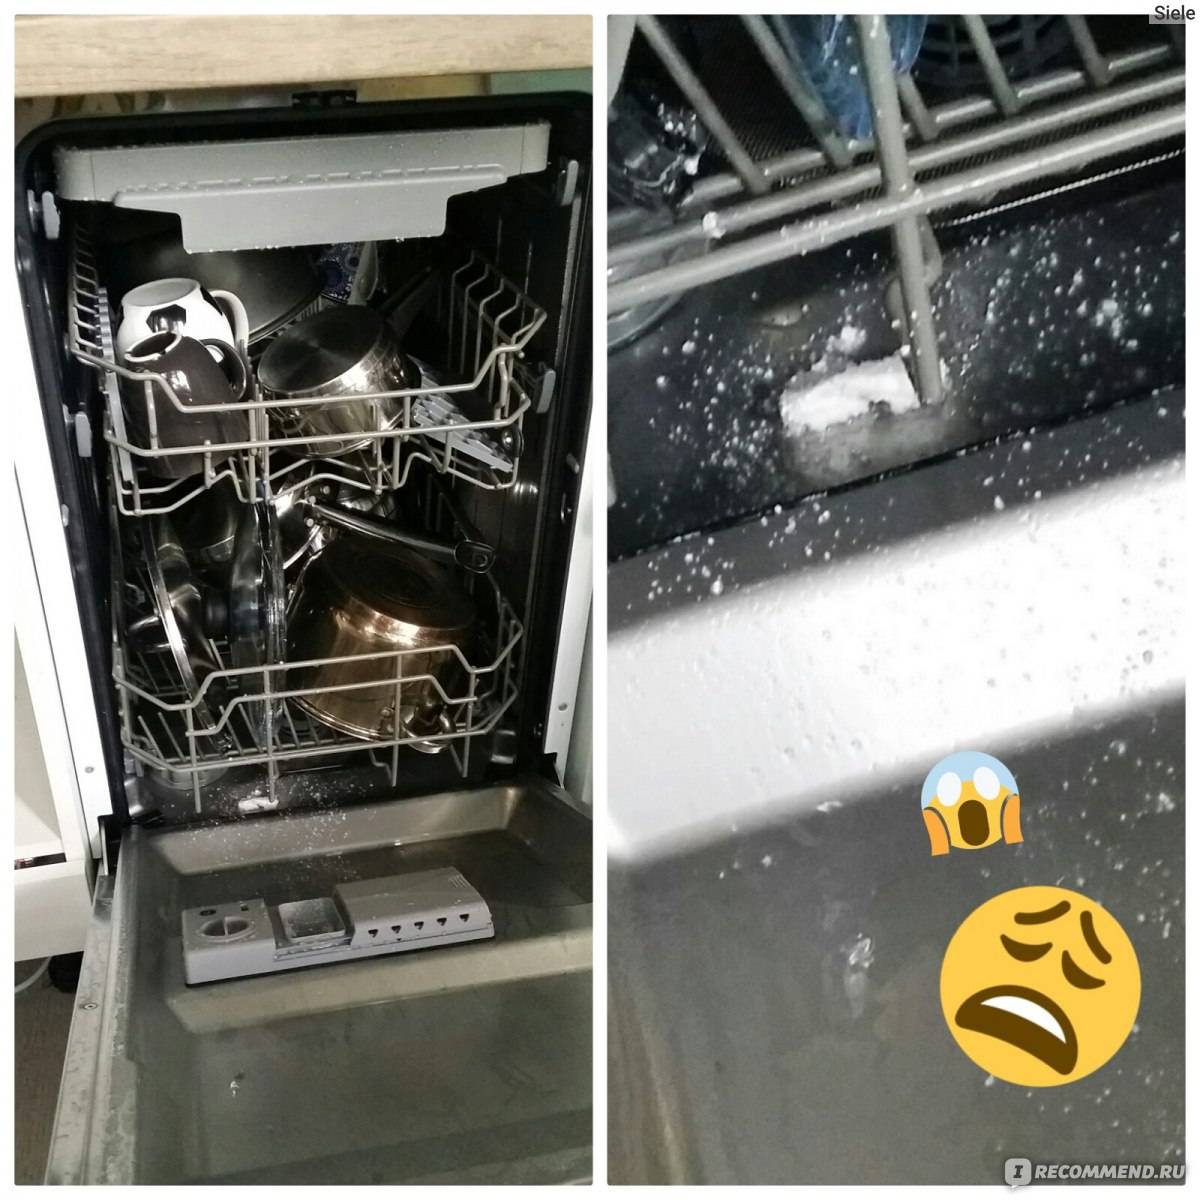 Первое включение посудомоечной машины. Посудомоечная машина Ginzzu dc508. Взорвалась посудомоечная машина. Запуск посудомоечной машины. Взрыв посудомоечной машины.